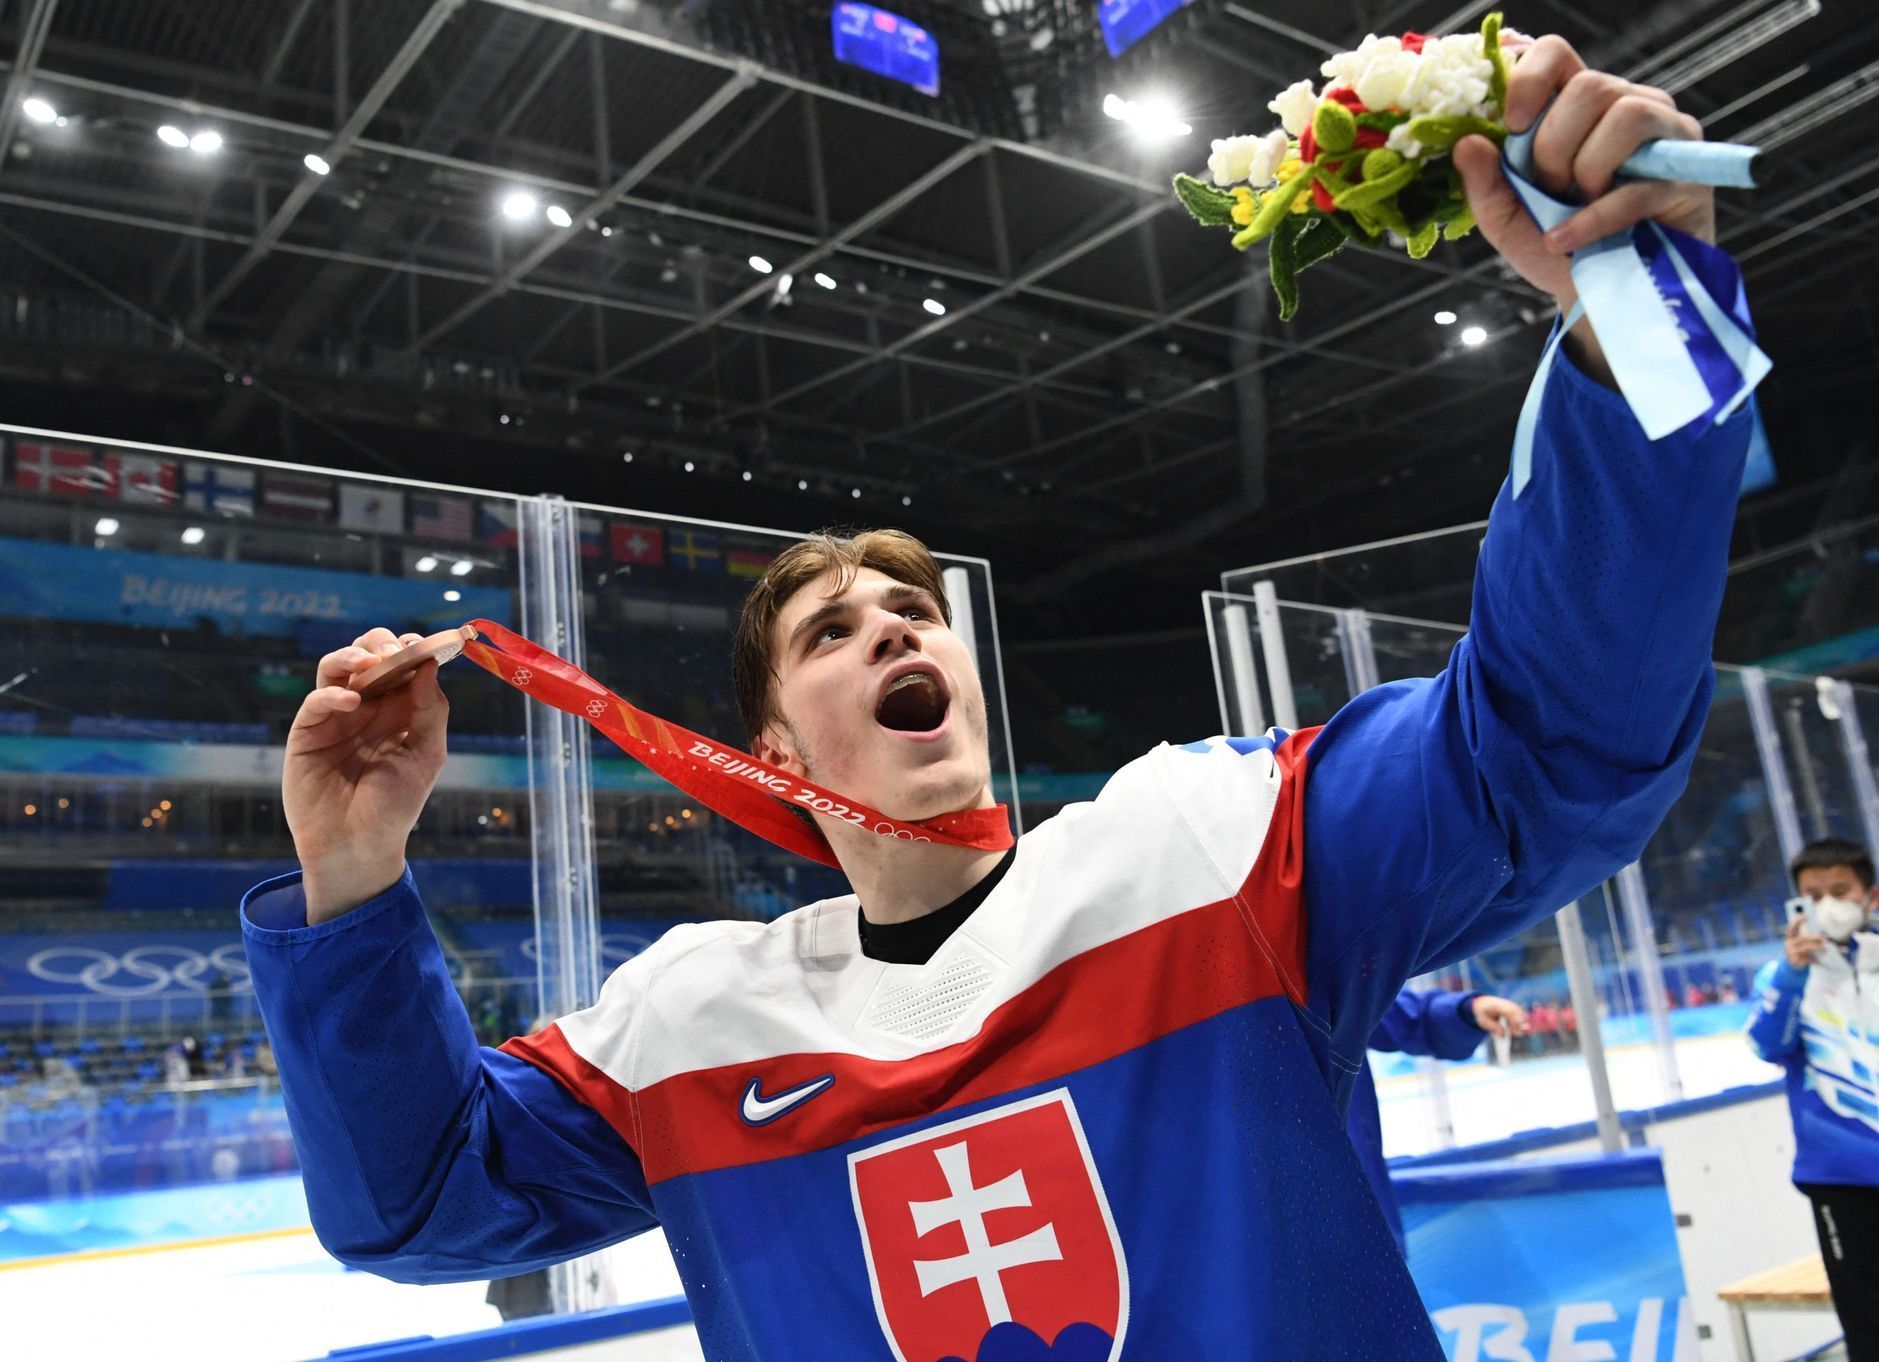 Ice Hockey - Men's Bronze Medal Game - Sweden v Slovakia